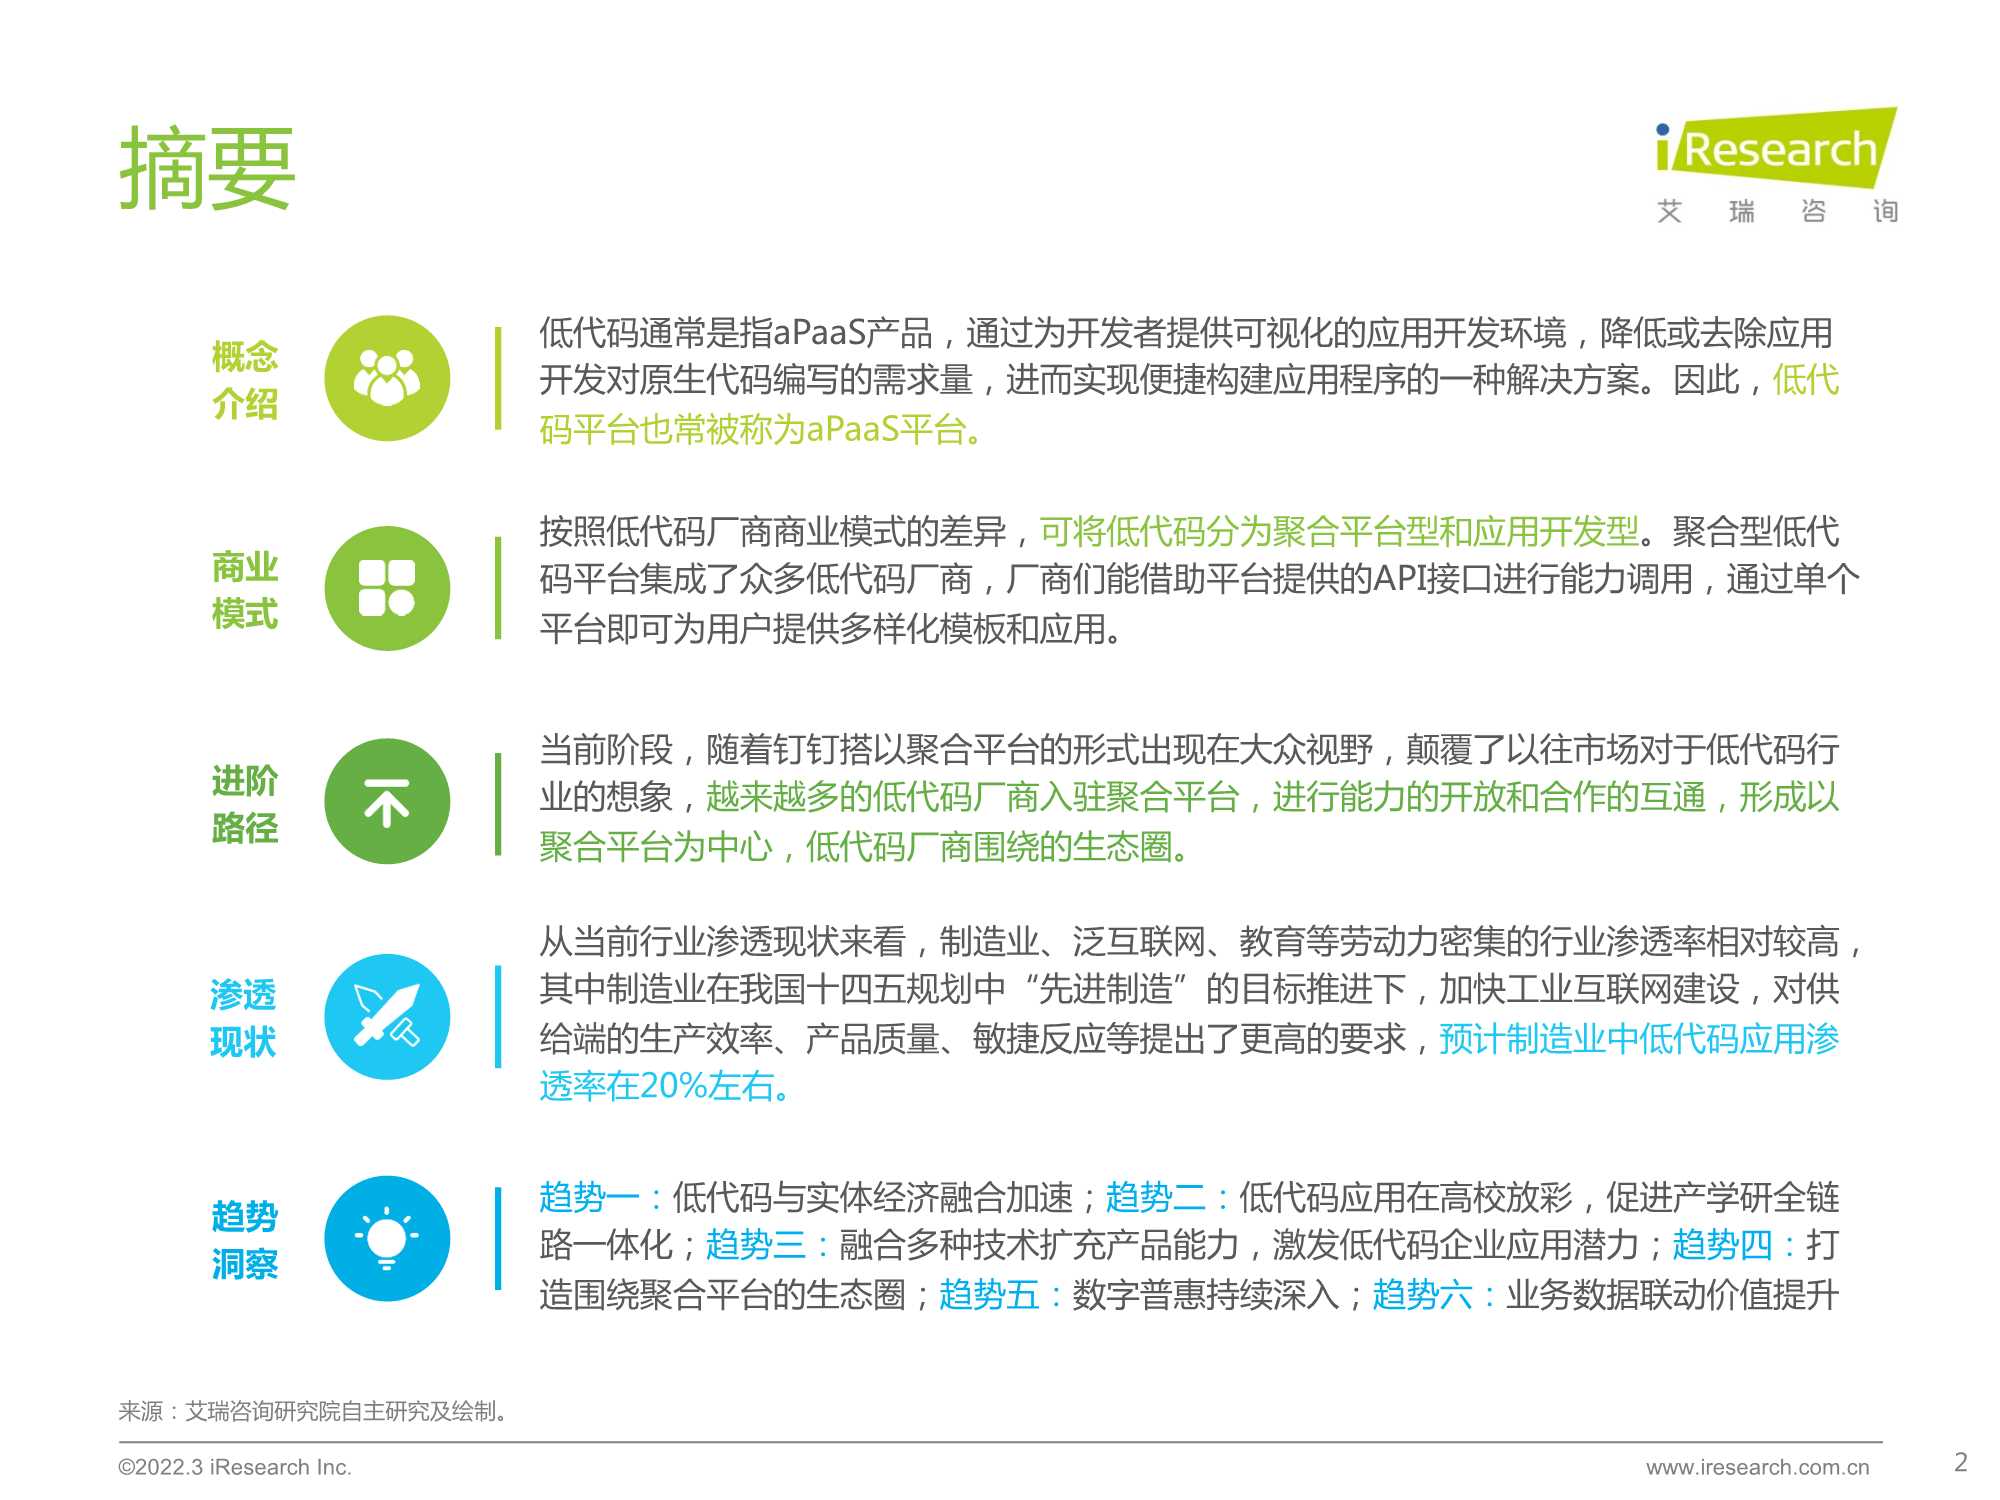 艾瑞咨询-中国低代码行业生态发展洞察报告-2022.03-50页